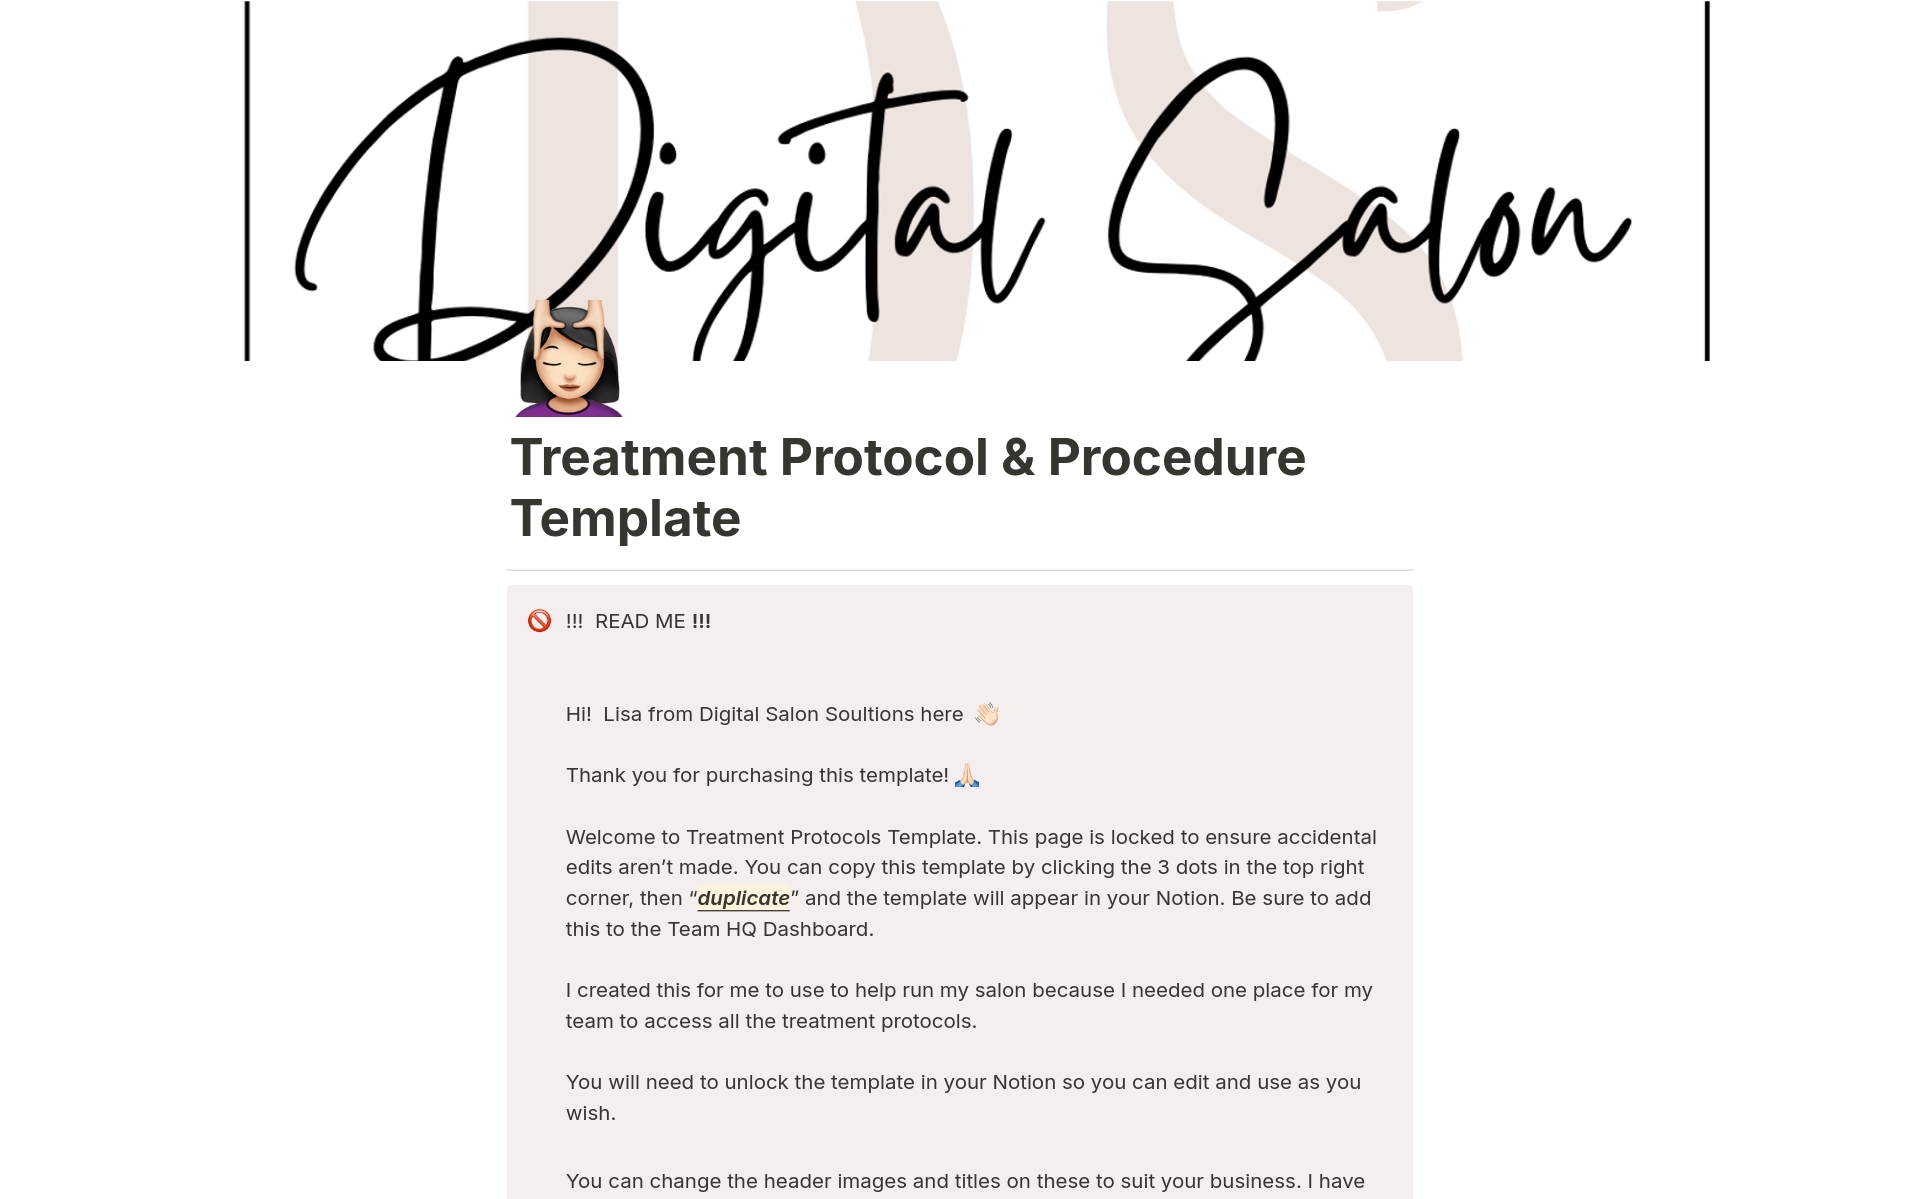 Aperçu du modèle de Treatment Protocol & Procedure Template